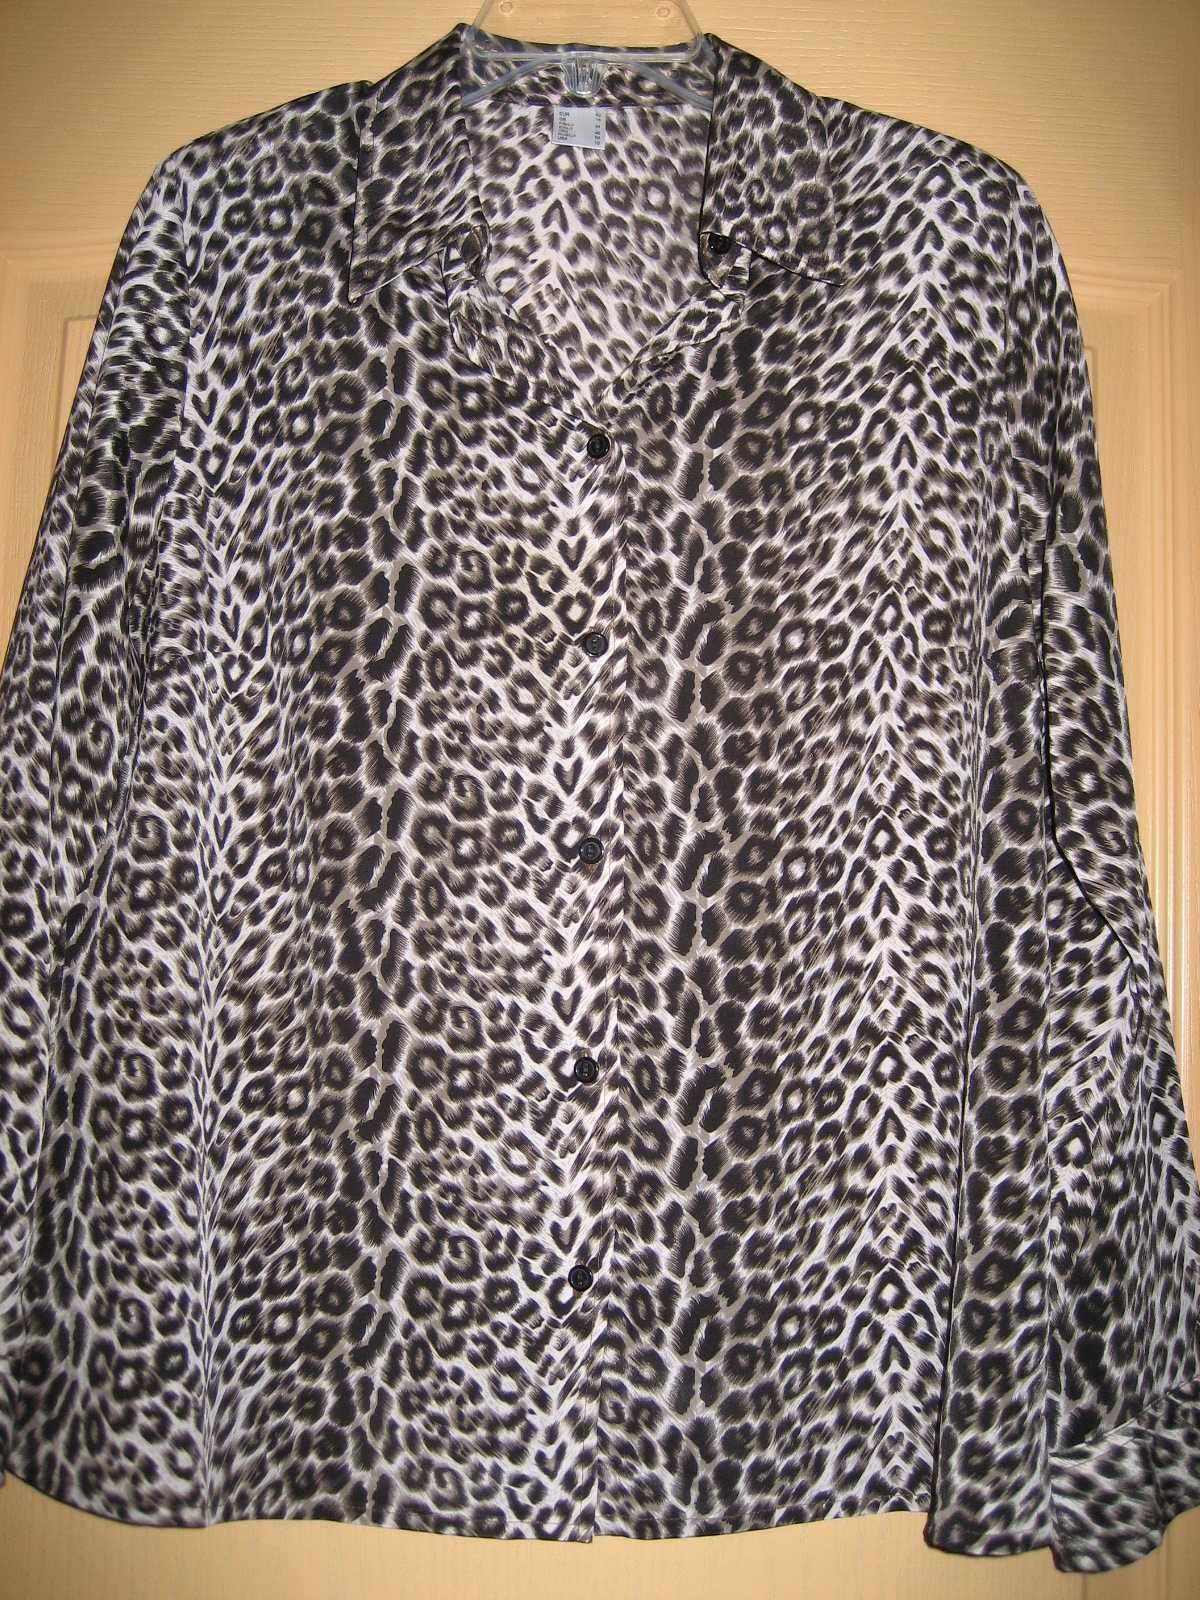 Продам блузку женскую новую размер 50 леопардовая Классика,